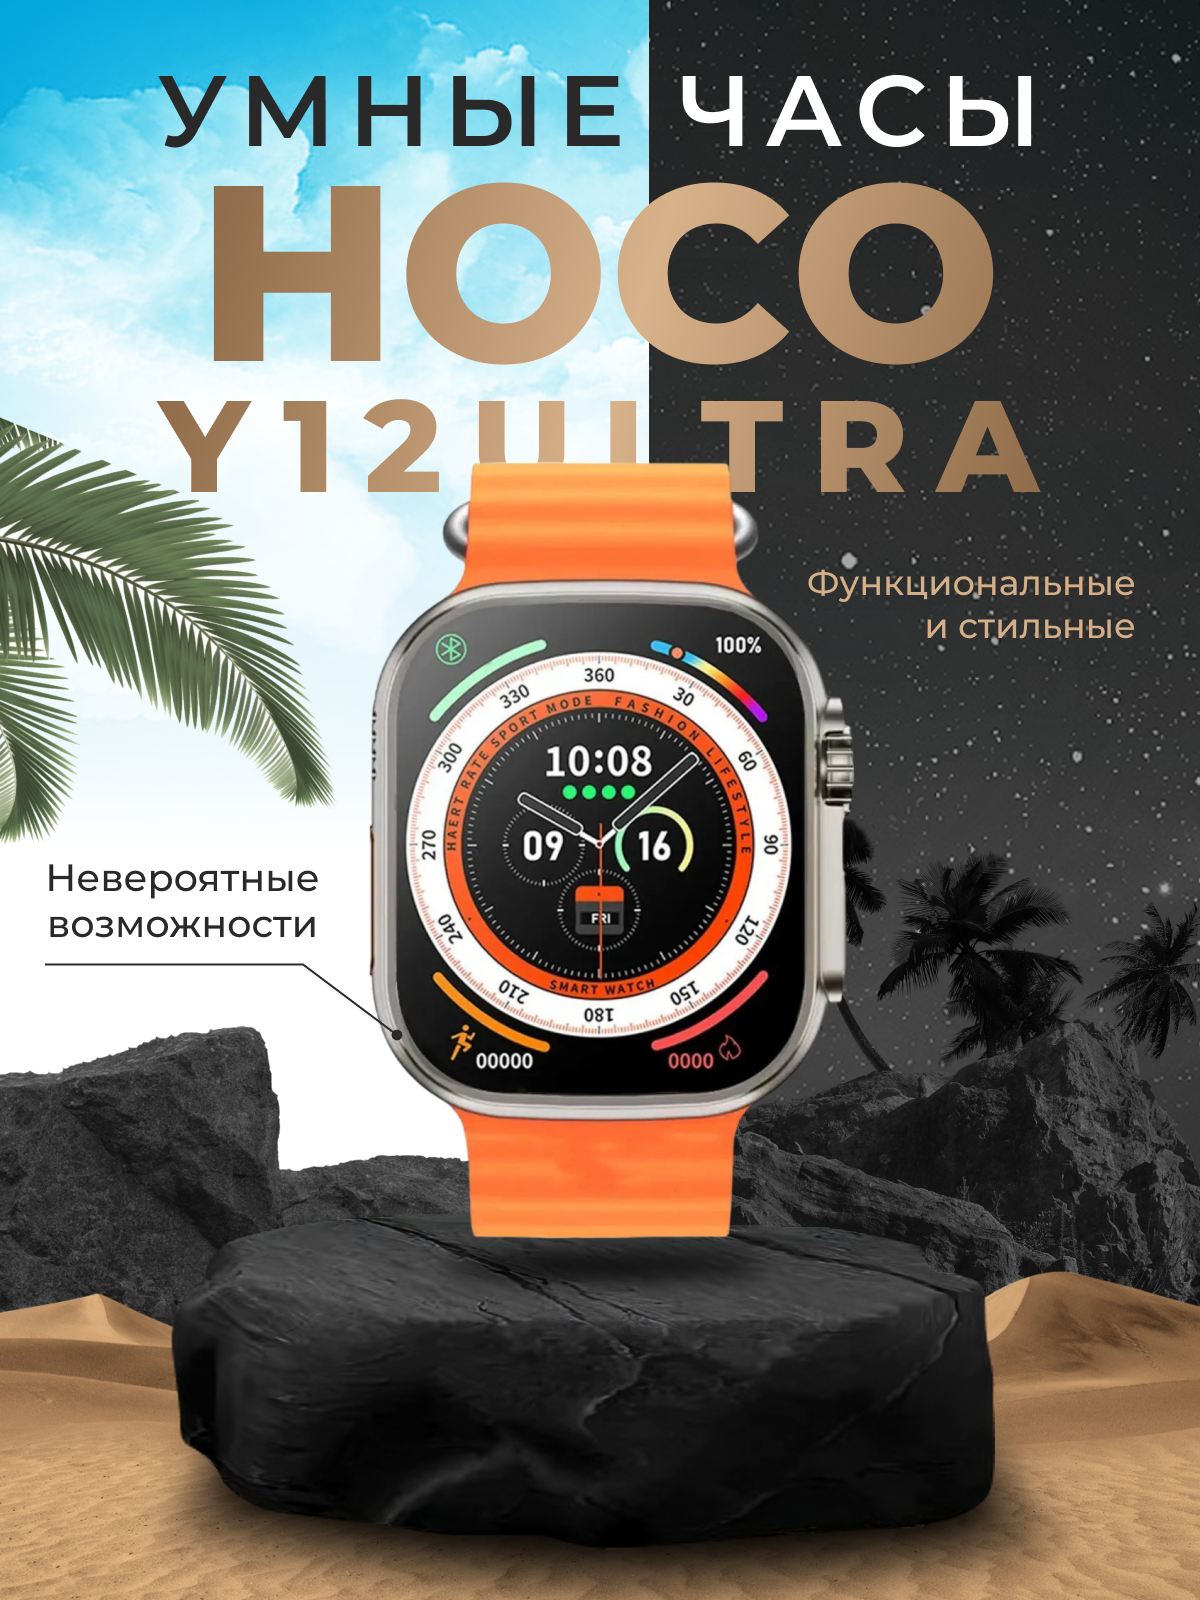 Смарт-часы HOCO Y12 Ultra титановое золото